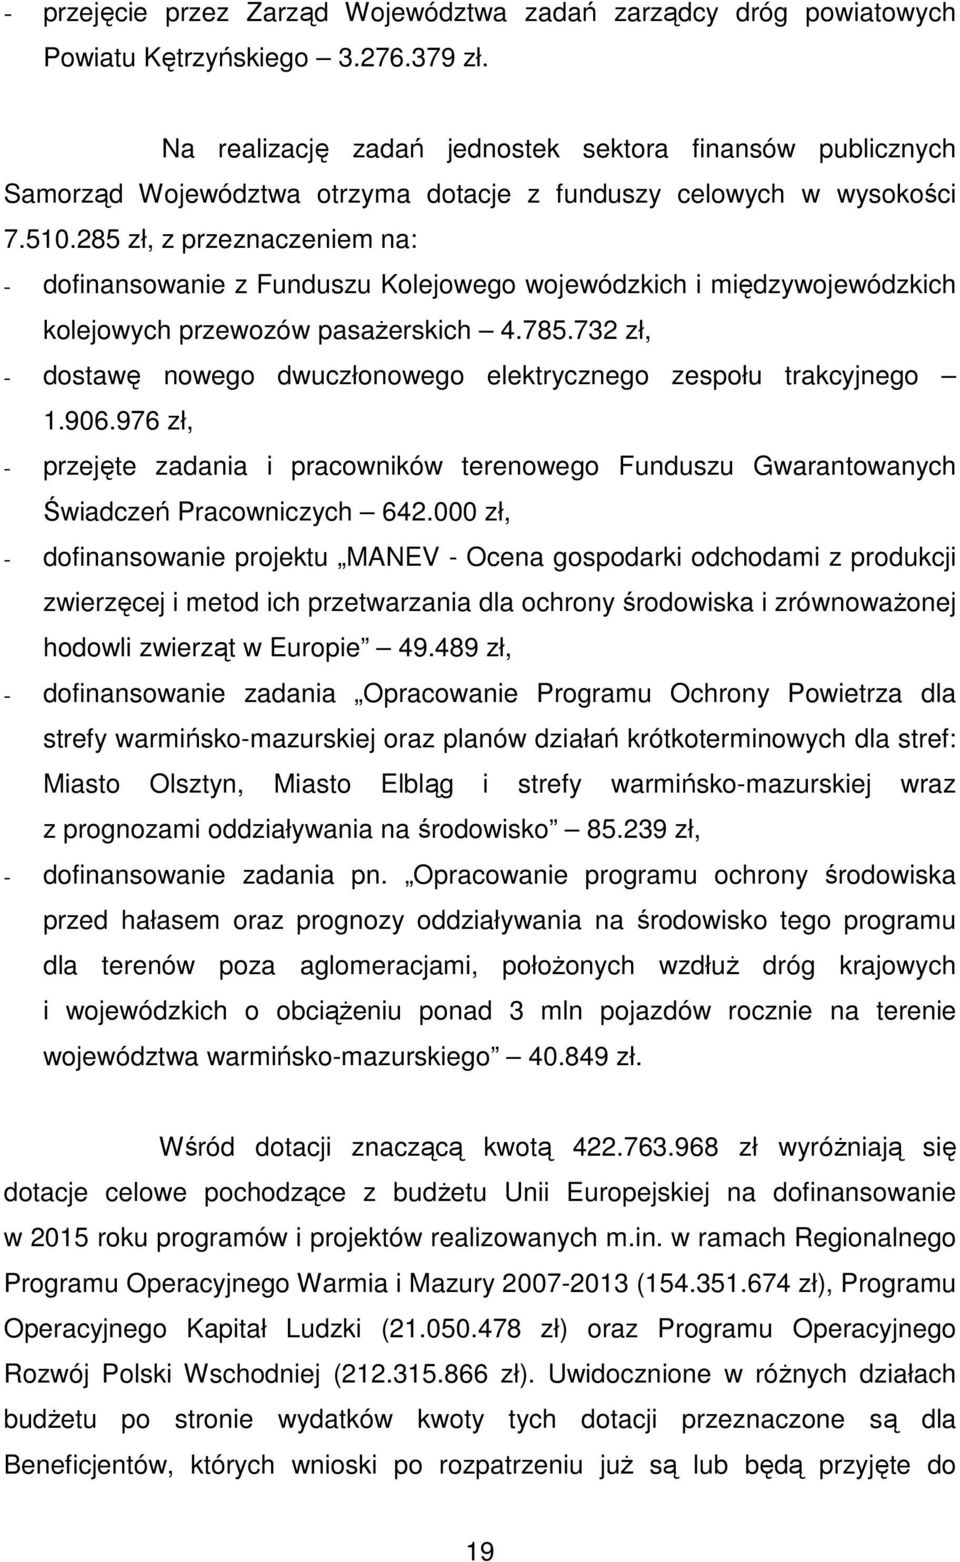 285 zł, z przeznaczeniem na: - dofinansowanie z Funduszu Kolejowego wojewódzkich i międzywojewódzkich kolejowych przewozów pasażerskich 4.785.